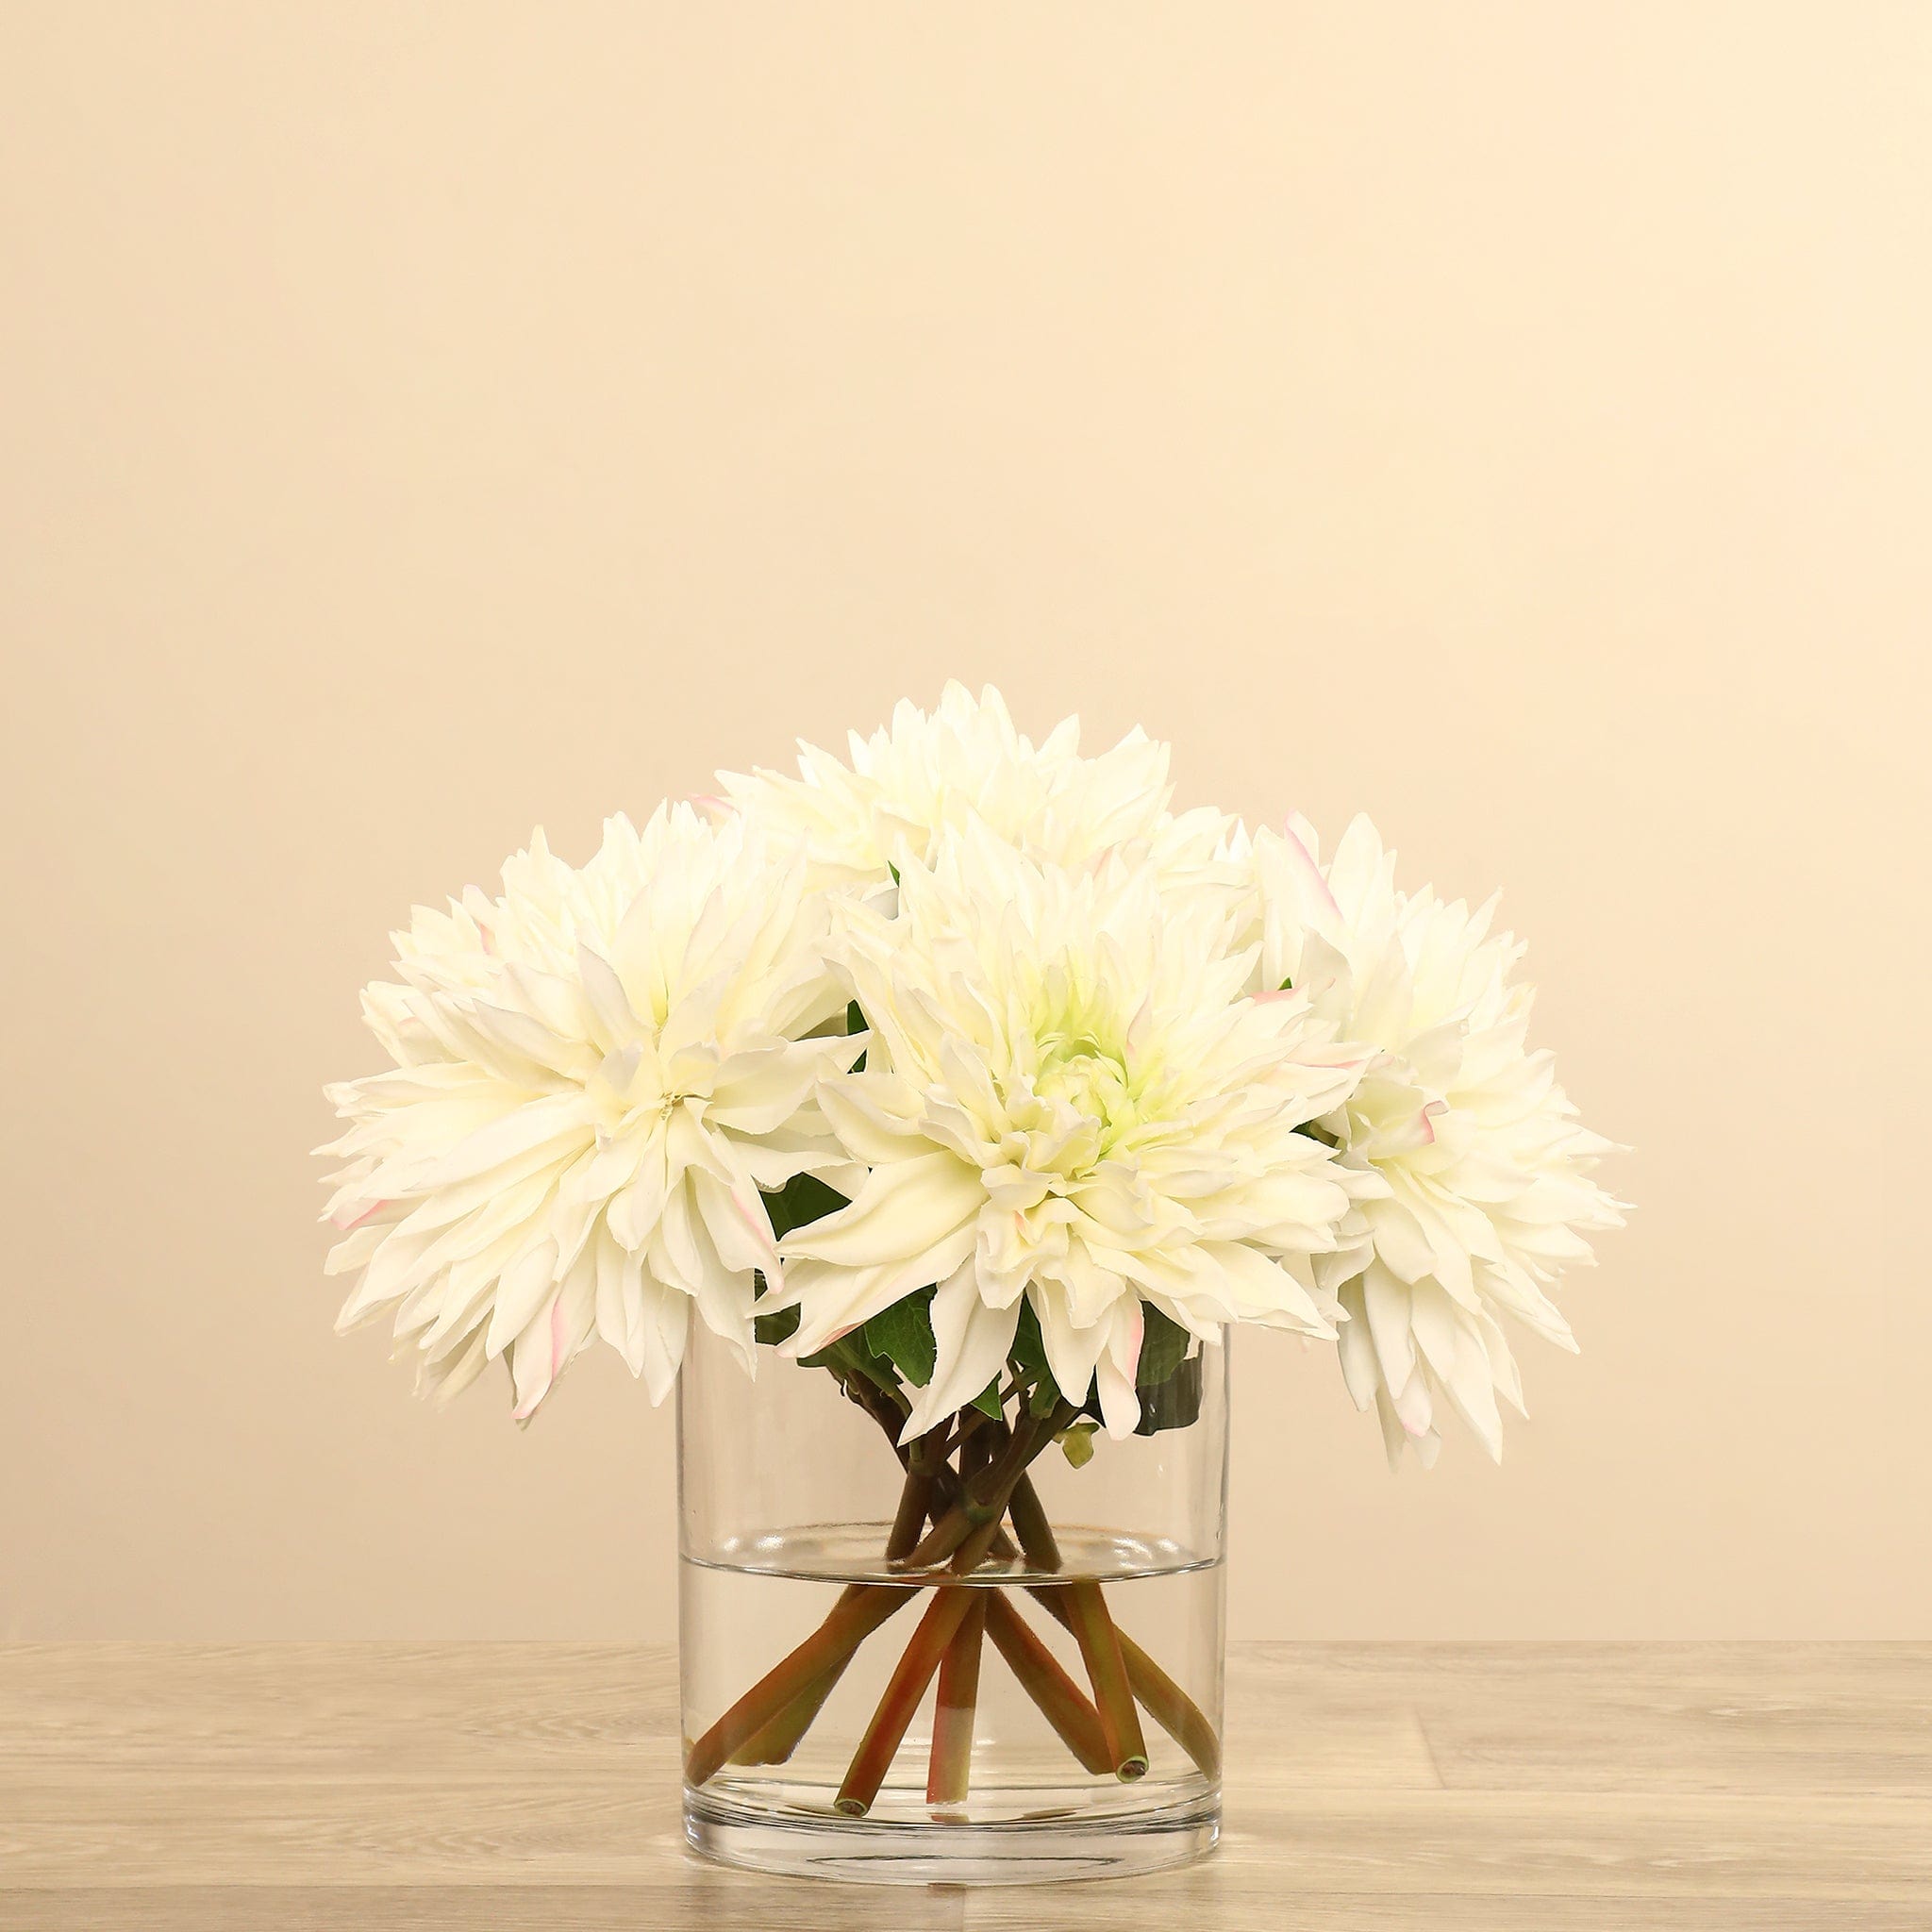 Artificial Dahlia Arrangement in Glass Vase - Bloomr